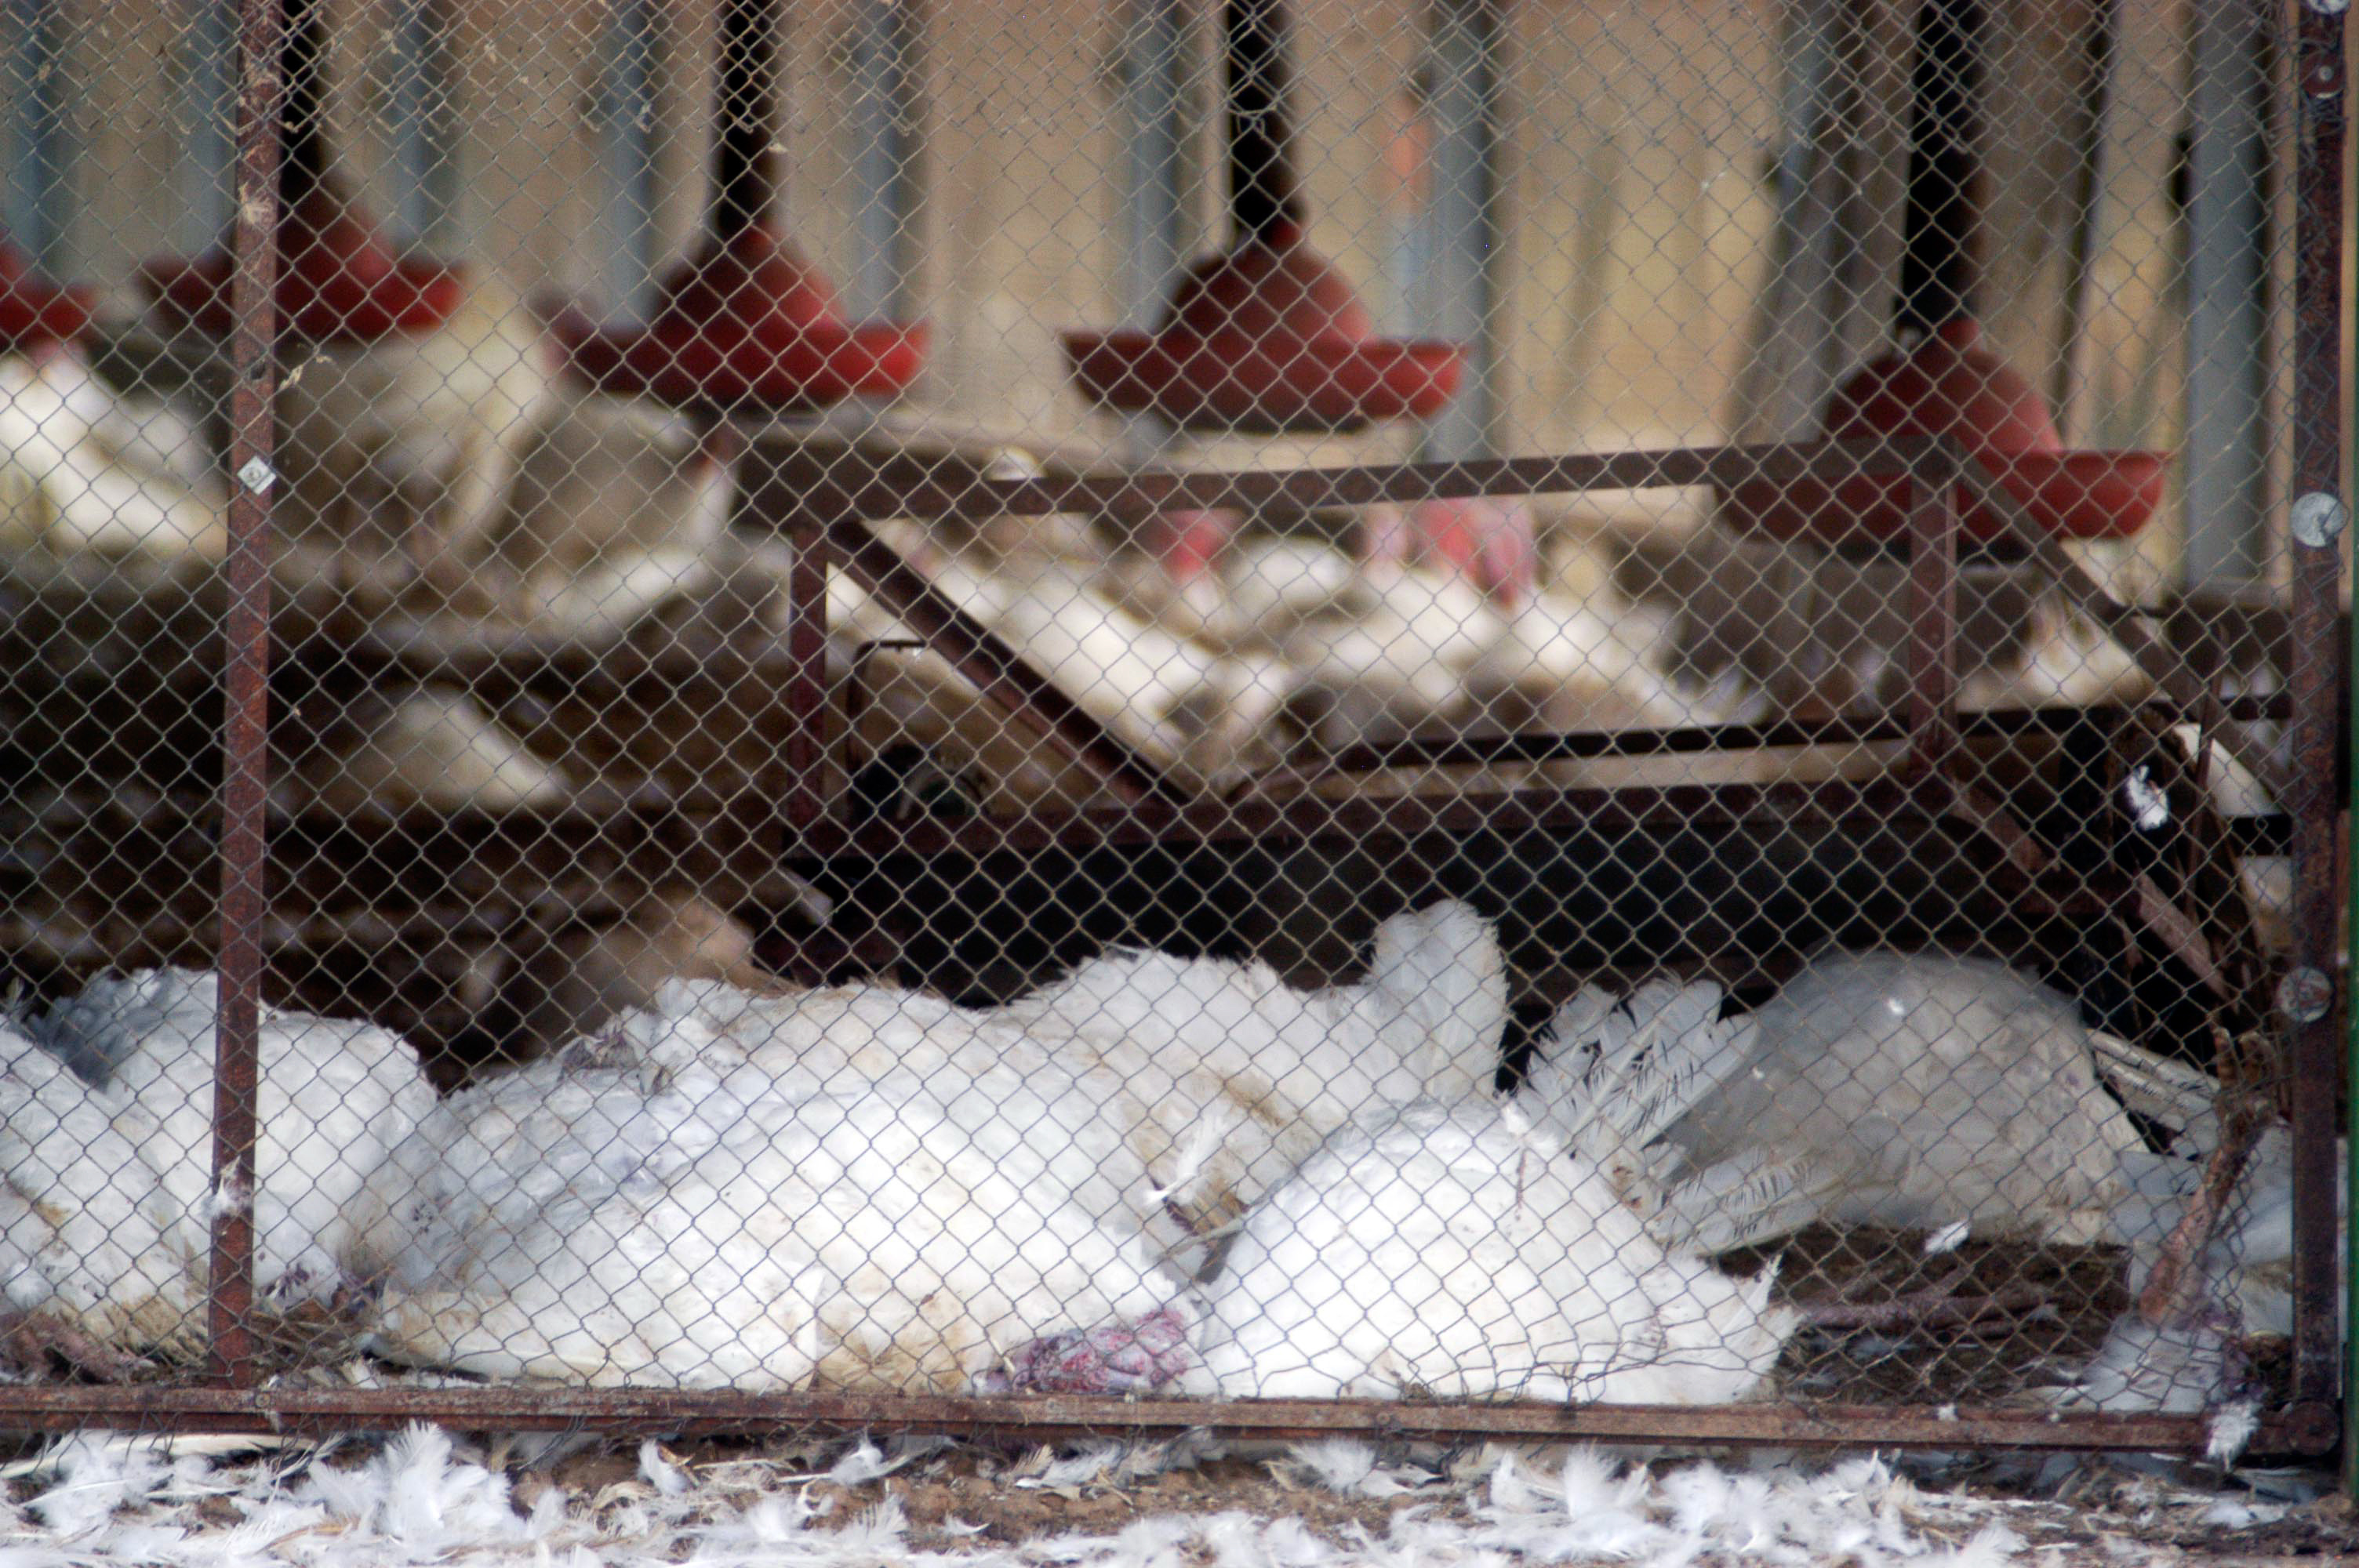 Dead hens in a chicken coop